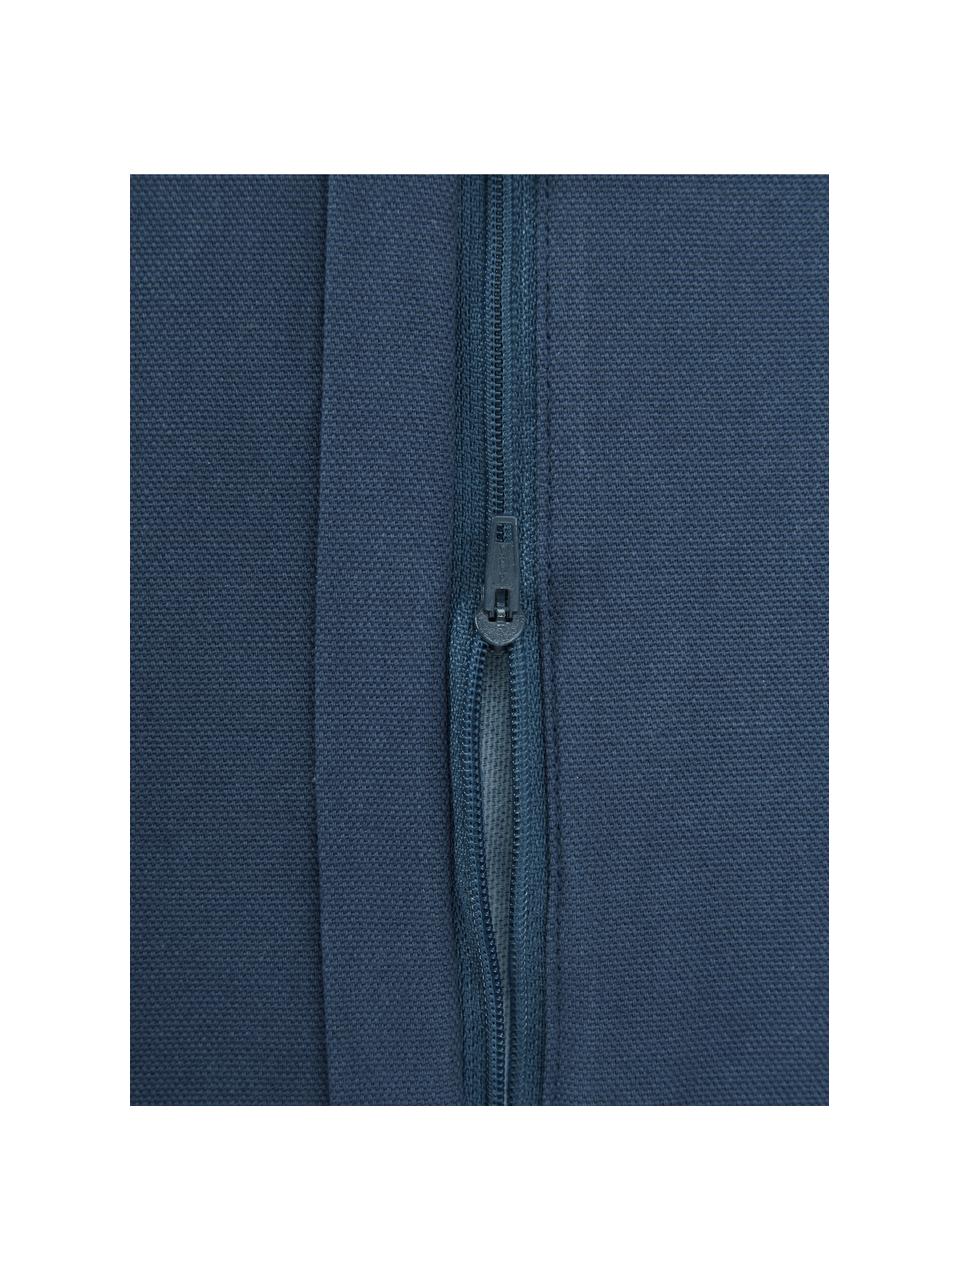 Poszewka na poduszkę Jada, 100% bawełna, Ciemny niebieski, biały, S 40 x D 40 cm